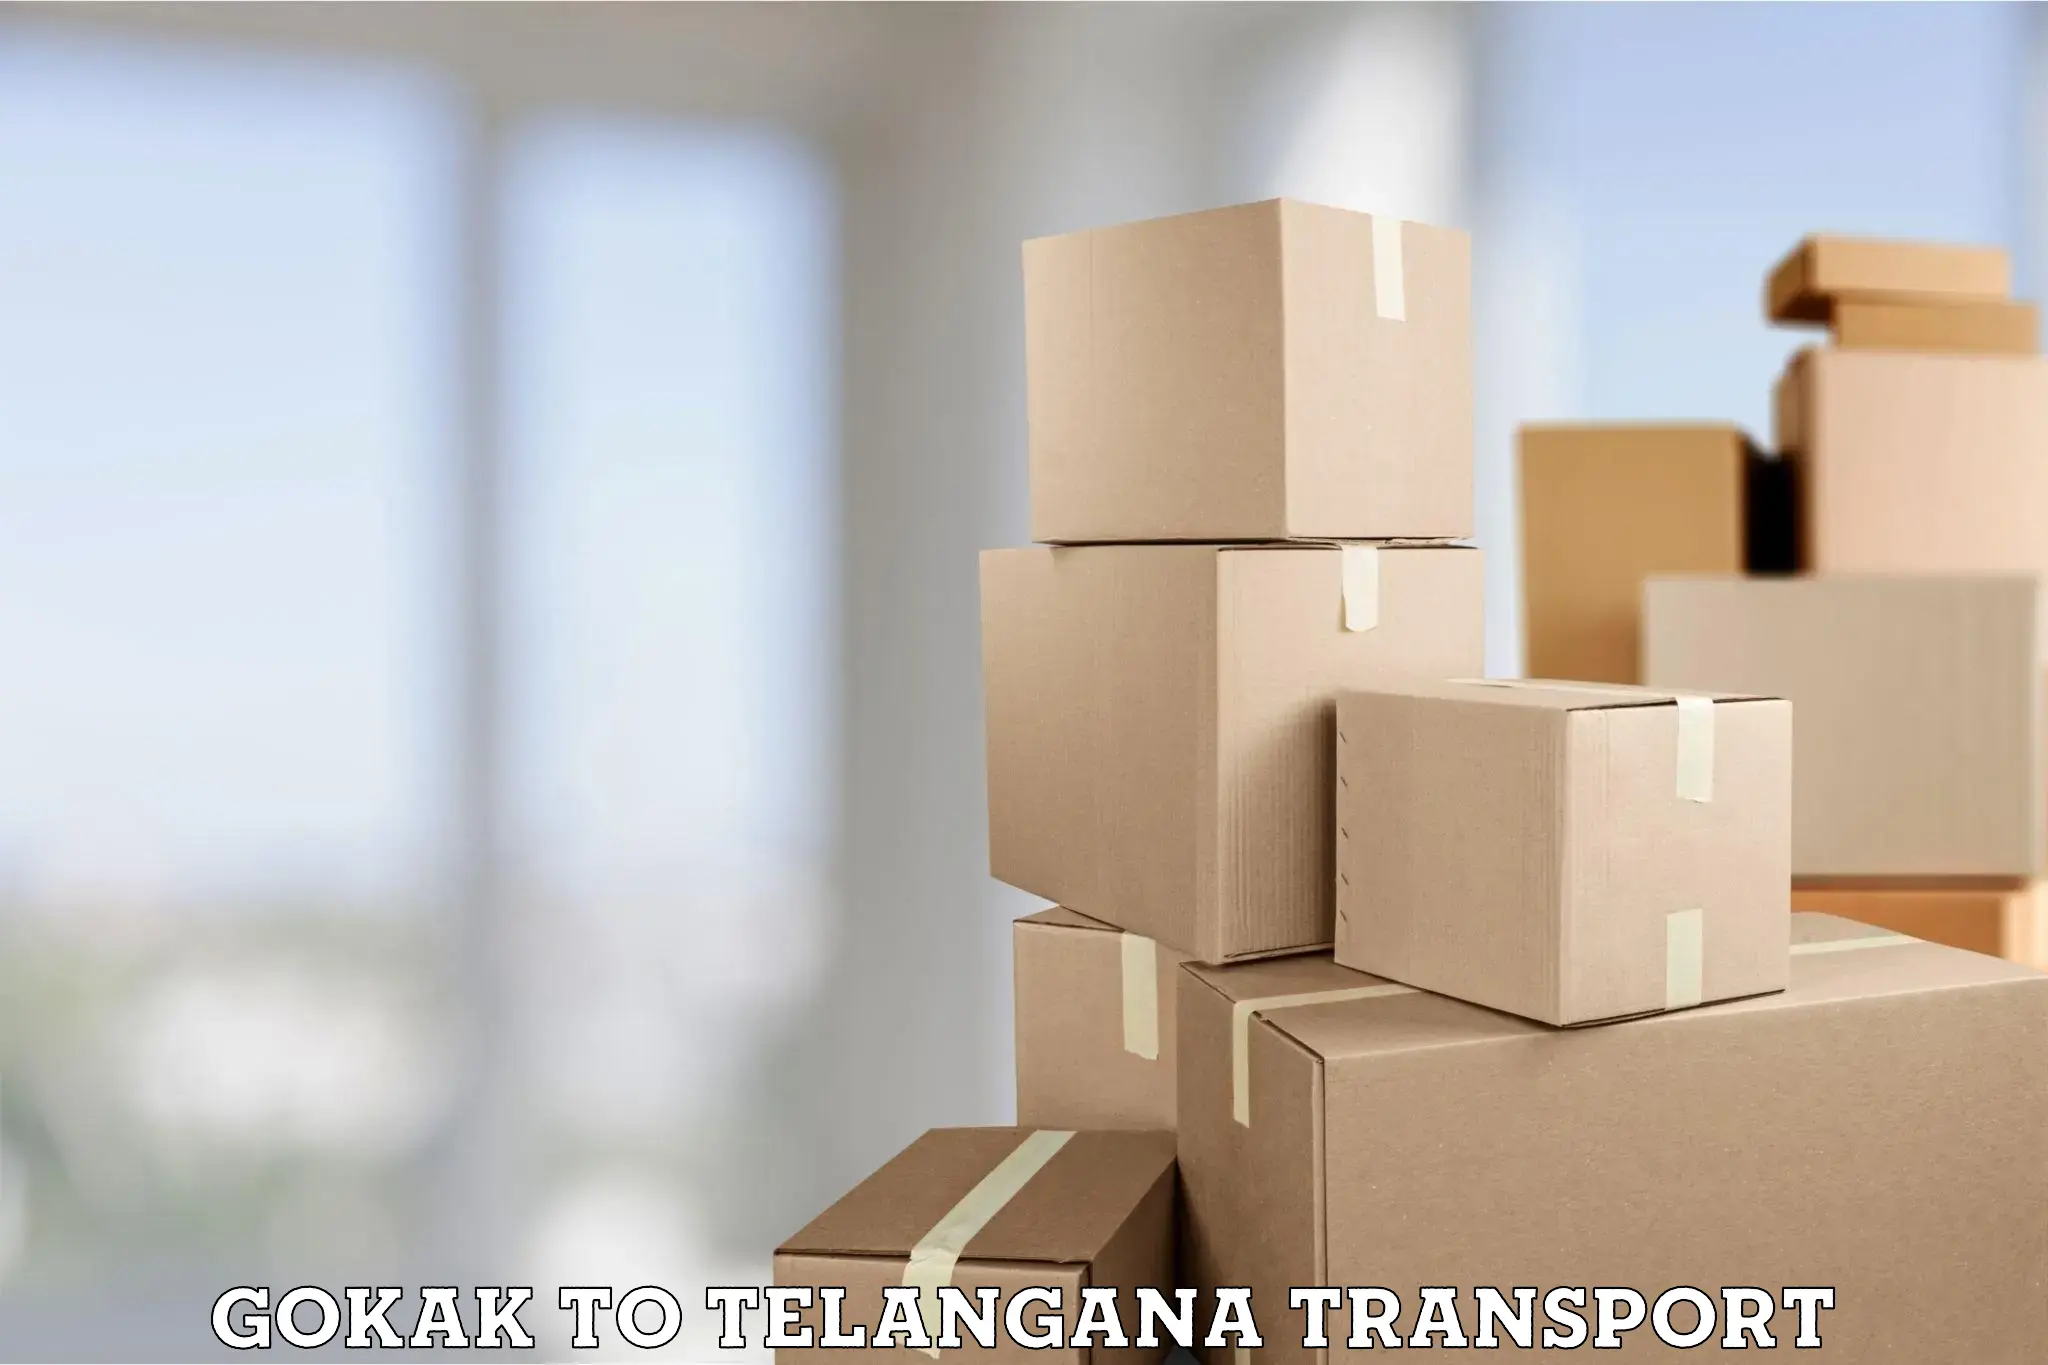 Interstate transport services Gokak to Telangana